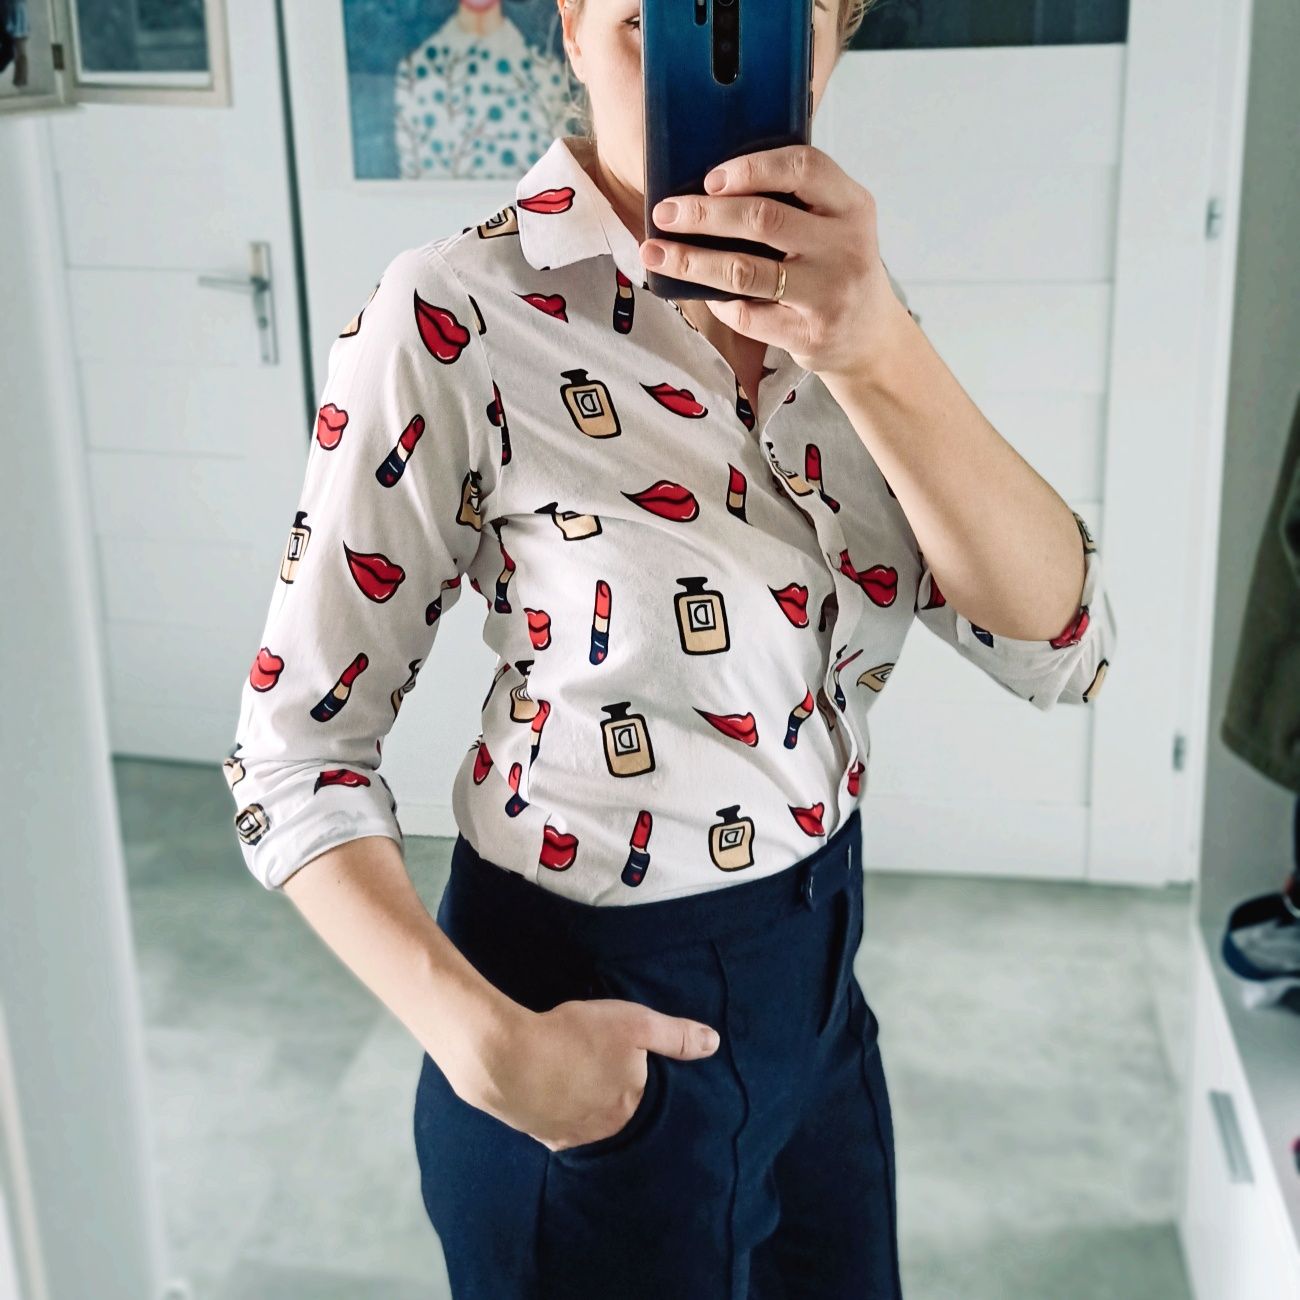 Elegancka taliowana koszula we wzory S/M do biura bawełna print